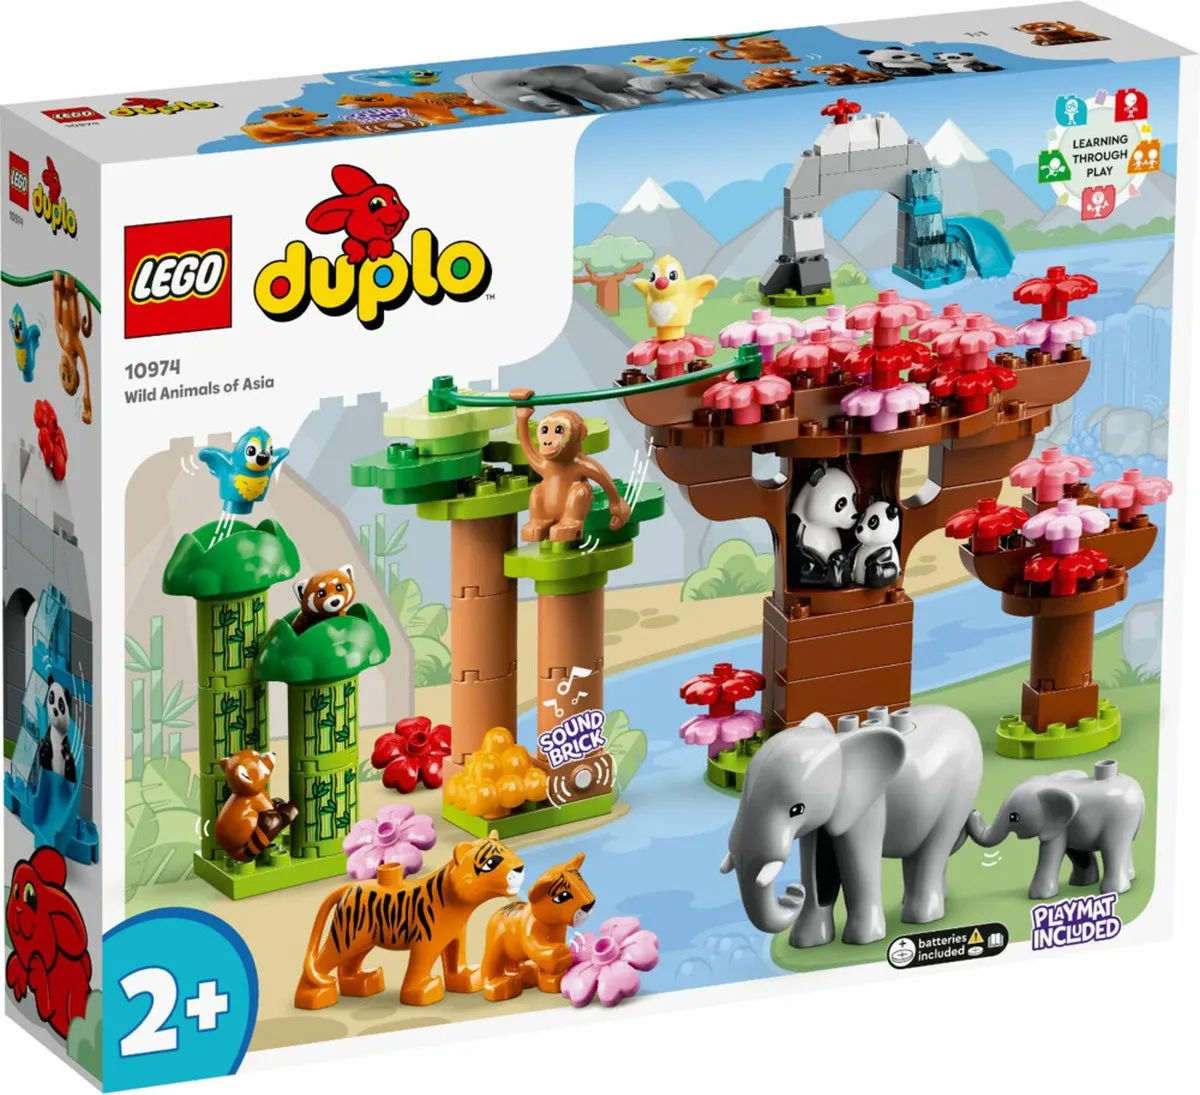 LEGO DUPLO Wilde dieren van Azië - 10974 speelgoed